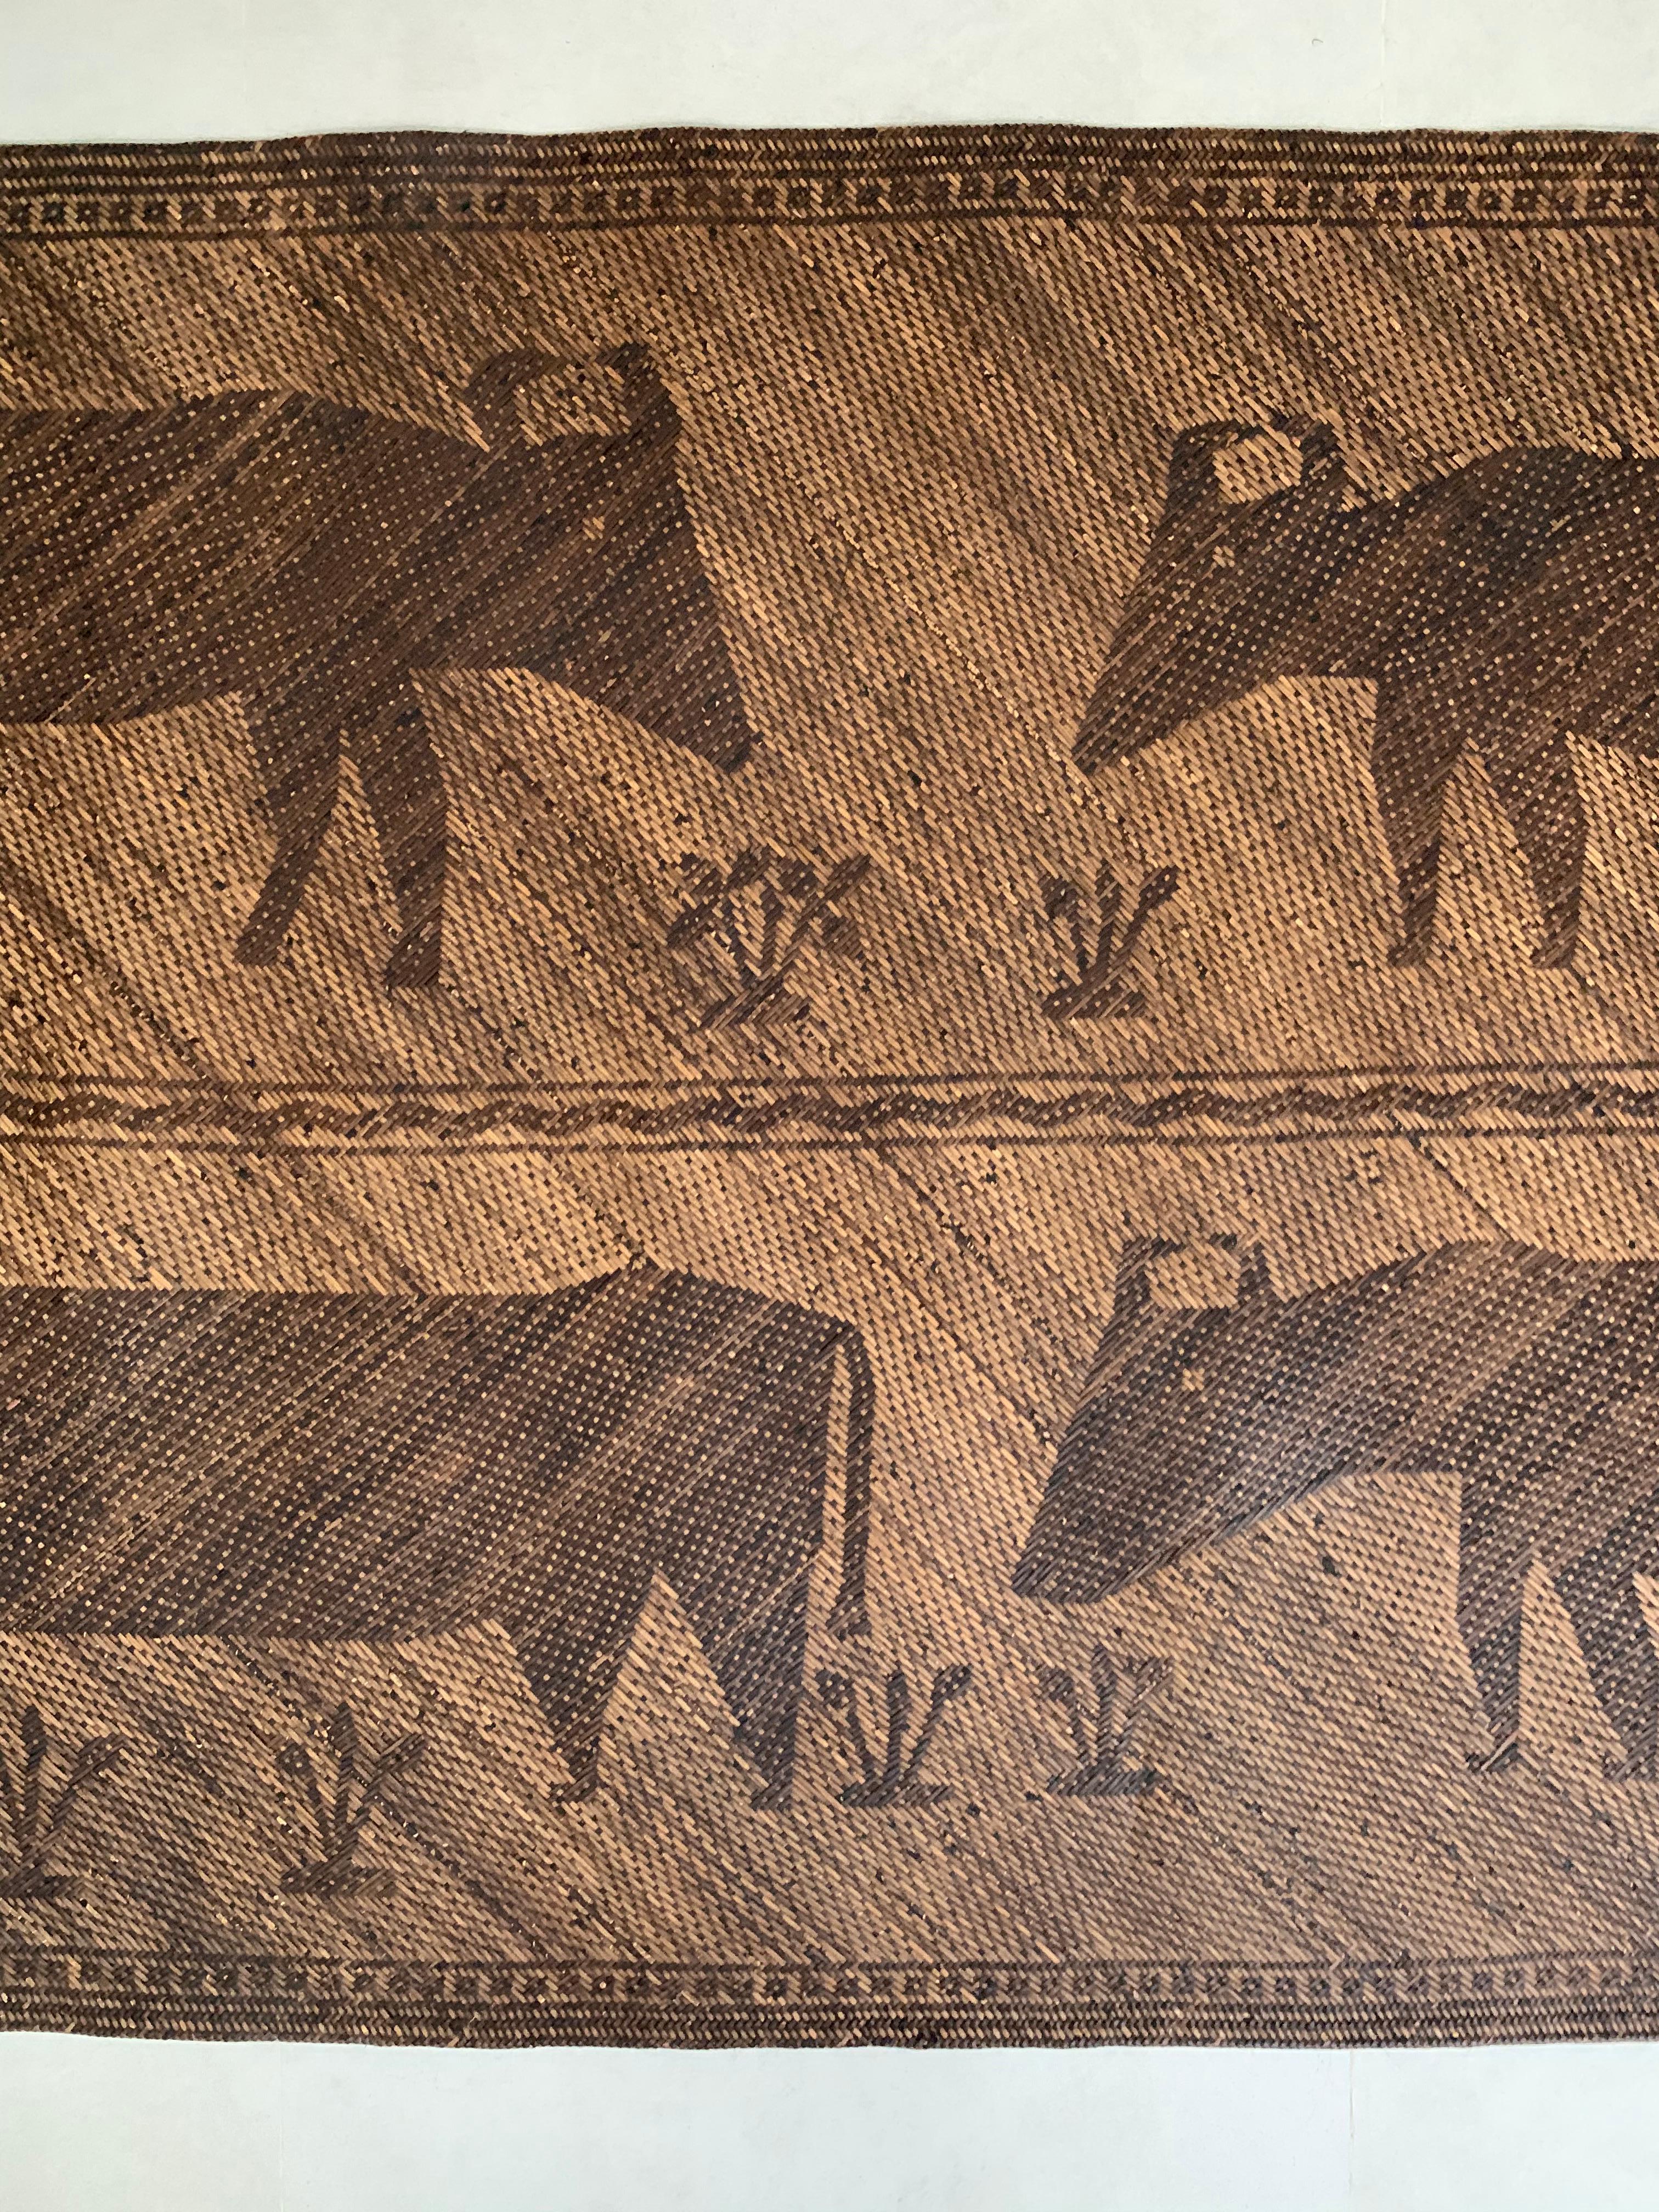 Ce tapis de sol occupait autrefois une longue maison tribale de la tribu Dayak de Bornéo. Il est fabriqué à partir de fibres de rotin tissées, teintes et de couleur naturelle, et présente des motifs tribaux représentant des buffles.

Dimension :